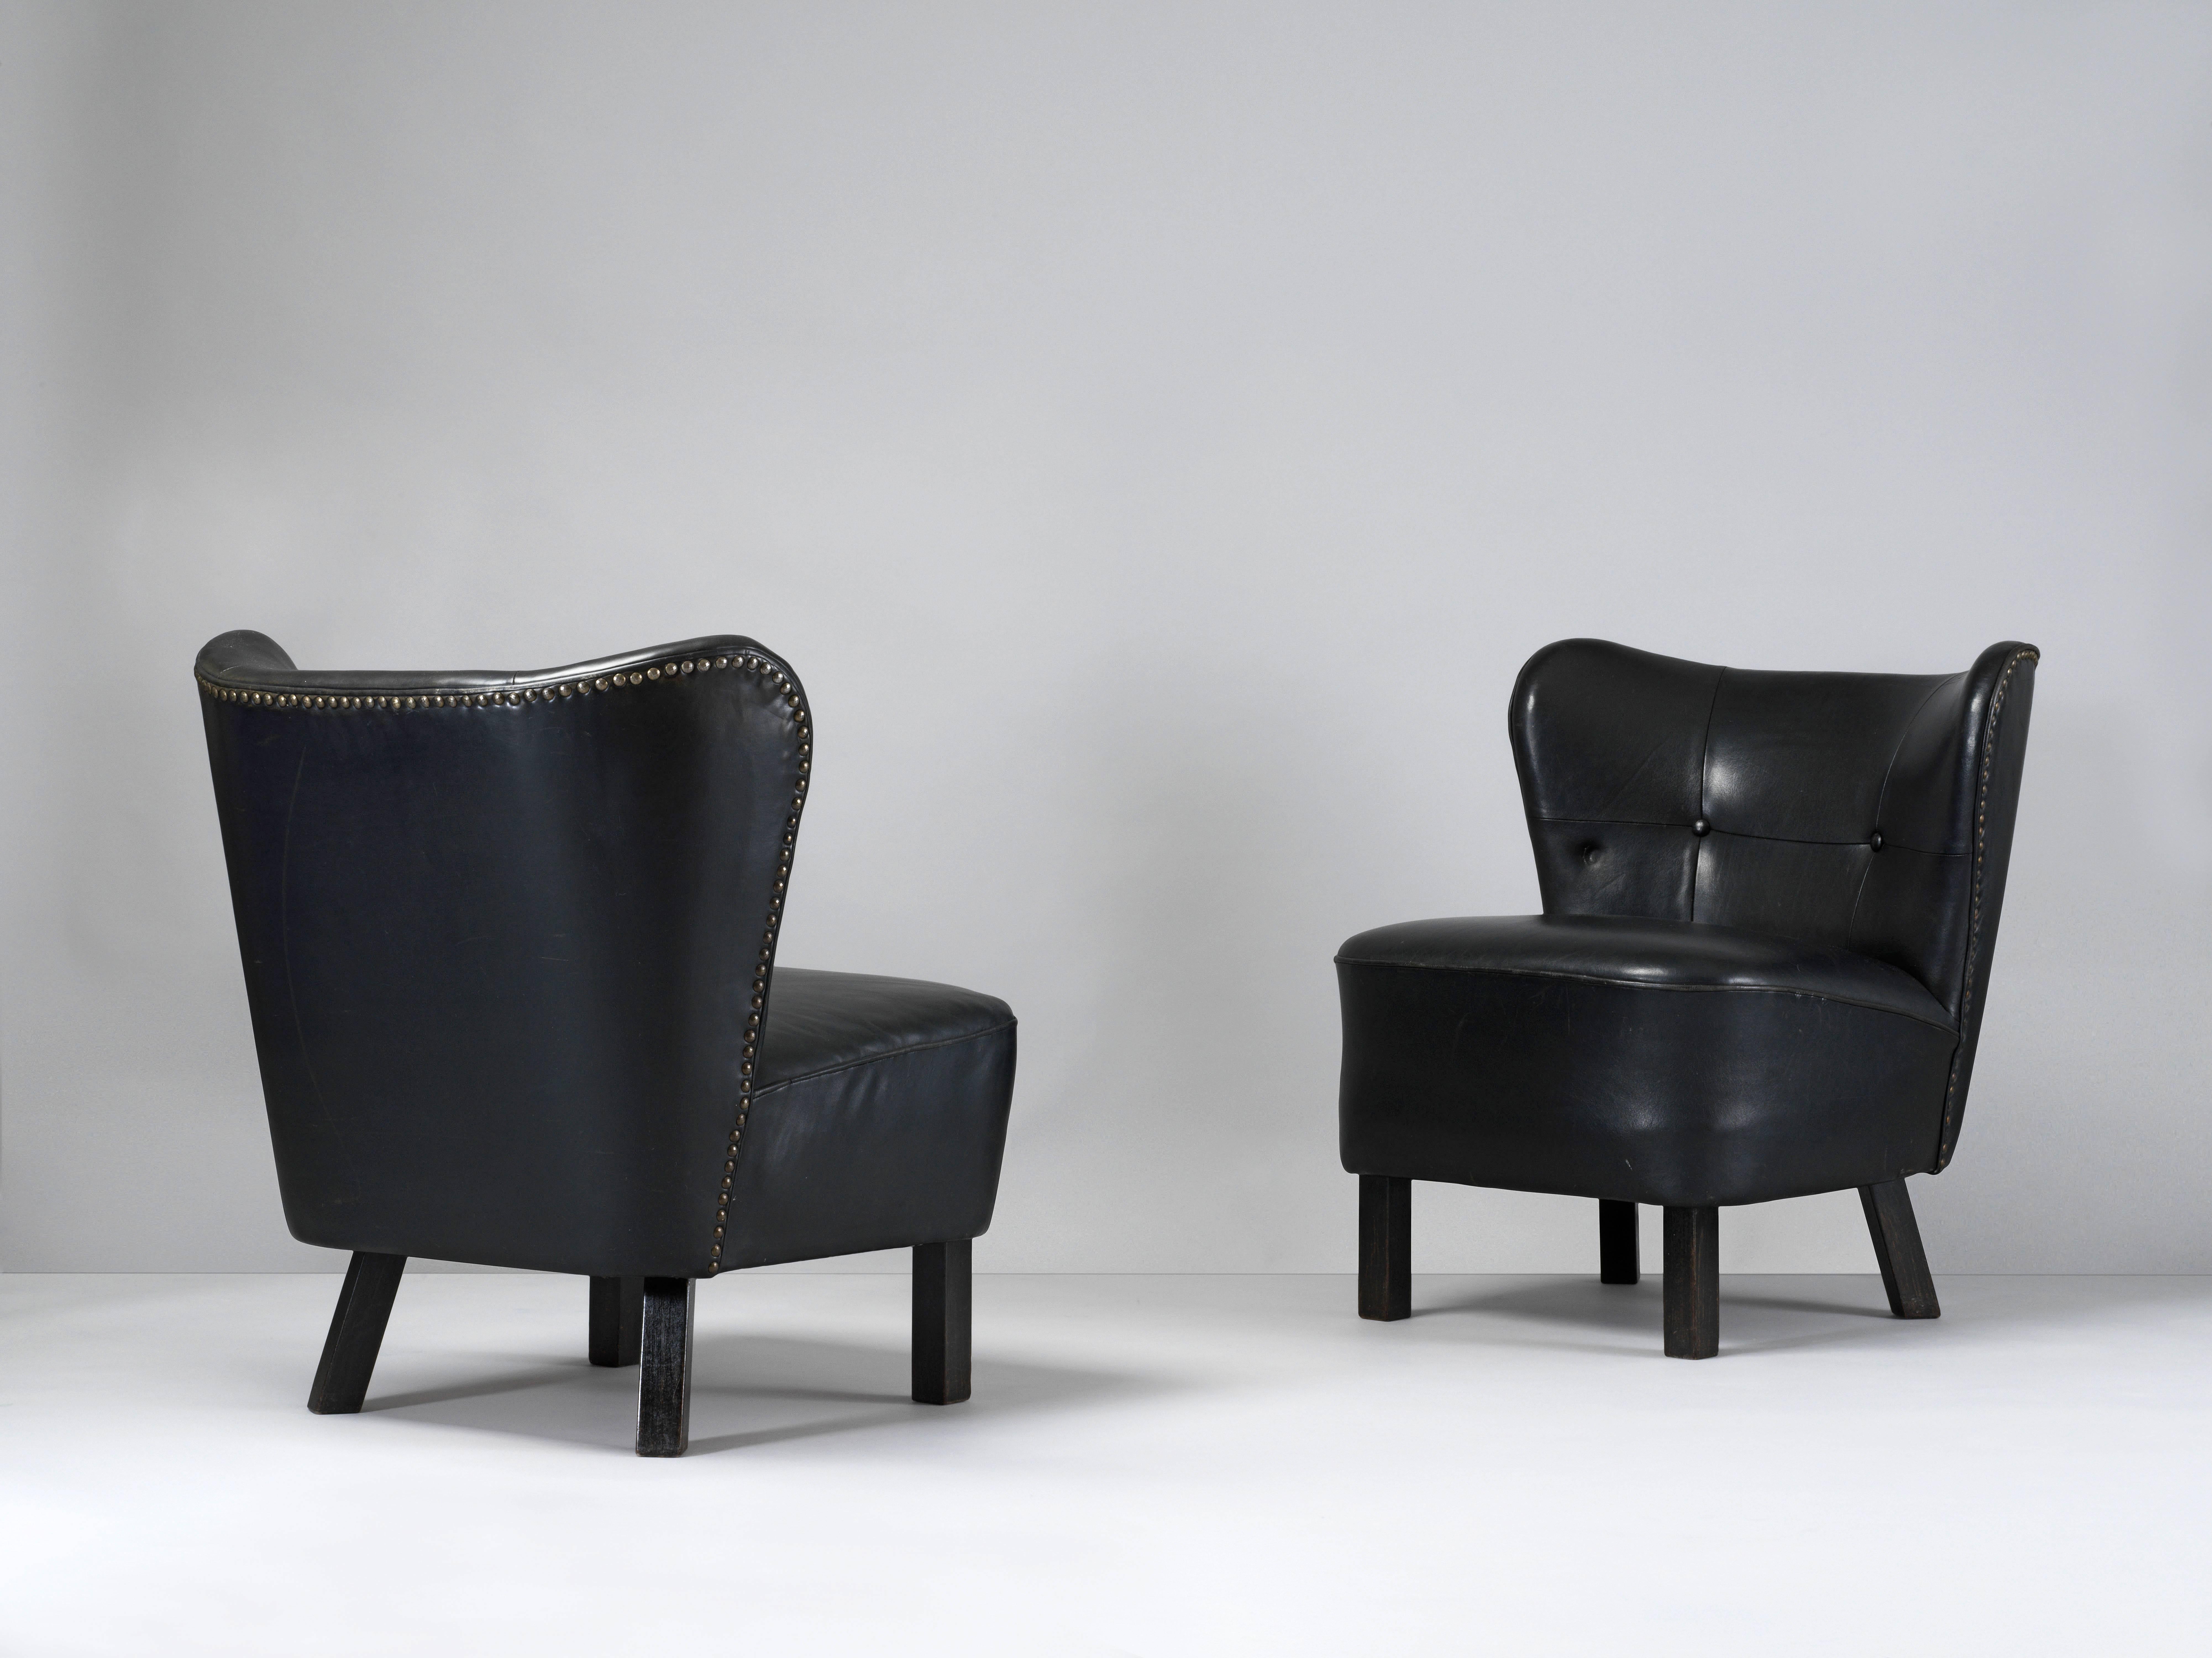 Une paire de chaises longues modernistes des années 1940. Un exemple précoce de l'ébénisterie traditionnelle danoise avec une sellerie d'origine en cuir teint en noir et des clous en laiton encadrant le dossier et les pieds en bois avec une peinture